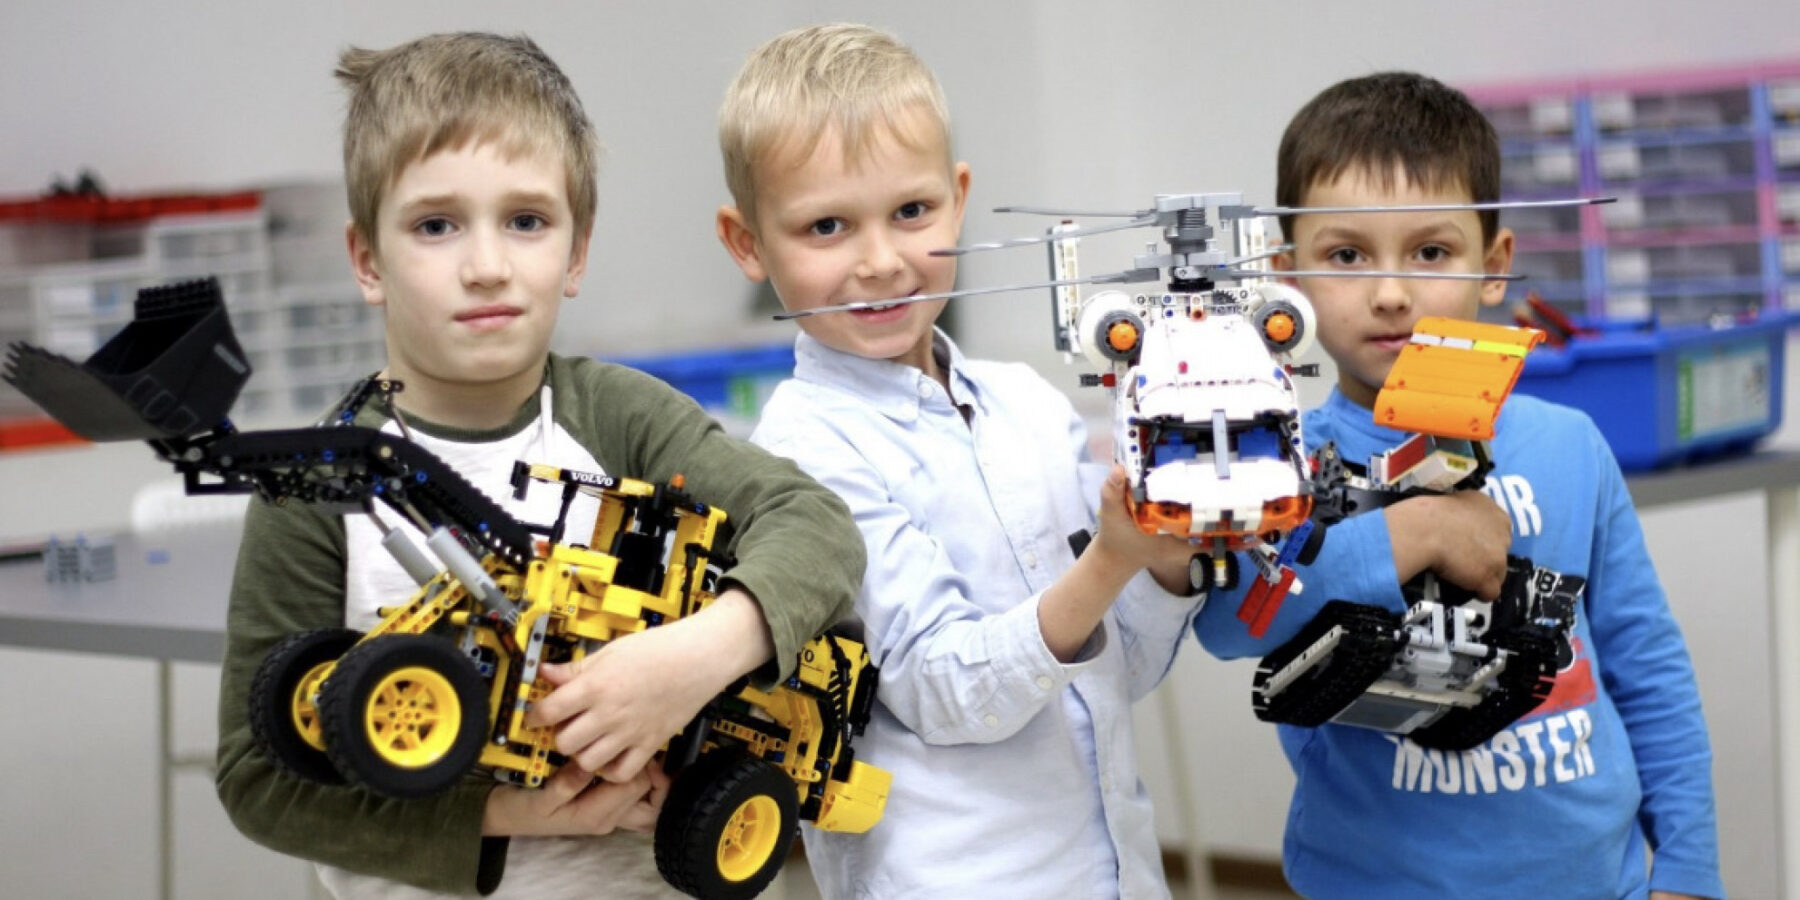 Здесь дети могут освоить проектирование реальных роботов. Эти занятия увлекательны и способствуют развитию математического мышления, командной работы и навыков принятия решений. Обучение робототехнике не только занимательно, но и формирует основу для будущей карьеры в IT-сфере. Питер Online представляет топ-10 детских школ робототехники в Санкт-Петербурге.